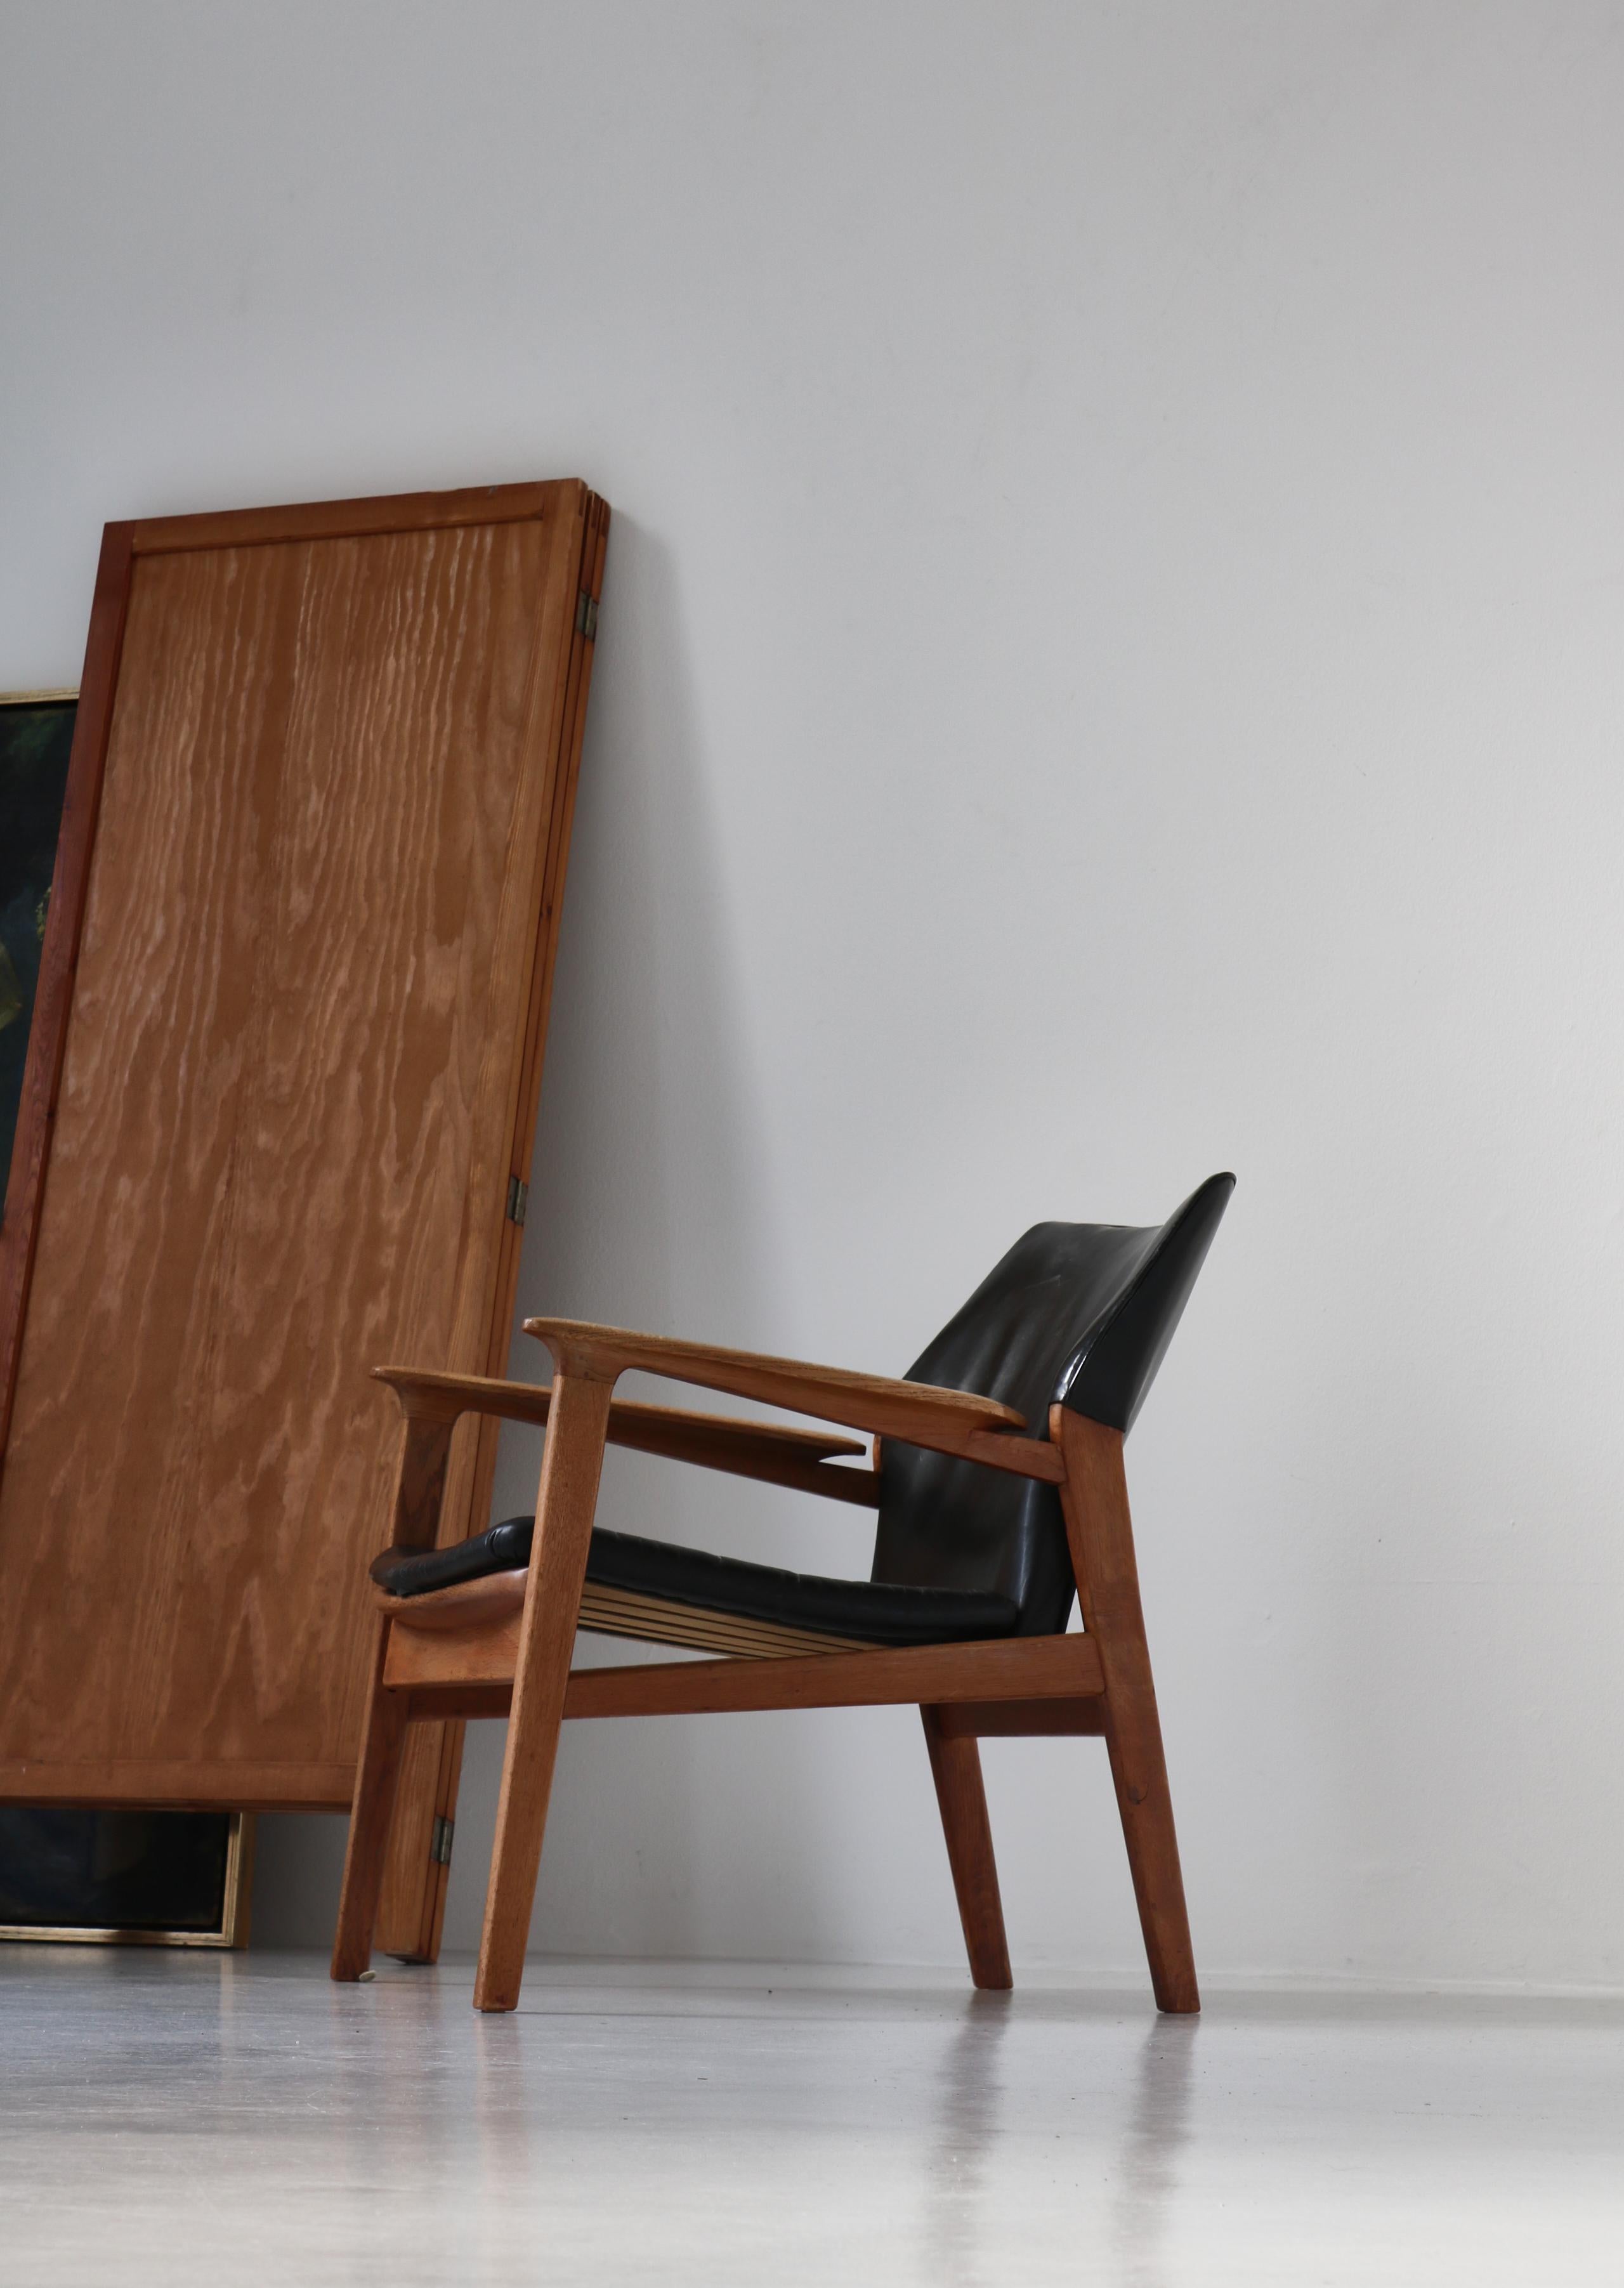 Magnifique et rare chaise longue conçue au début des années 1950 par le designer danois Hans Olsen et exécutée dans l'atelier de l'ébéniste Poul Dinesens au milieu des années 1950. Fabriqué en chêne massif patiné et en cuir aniline noir. Le fauteuil